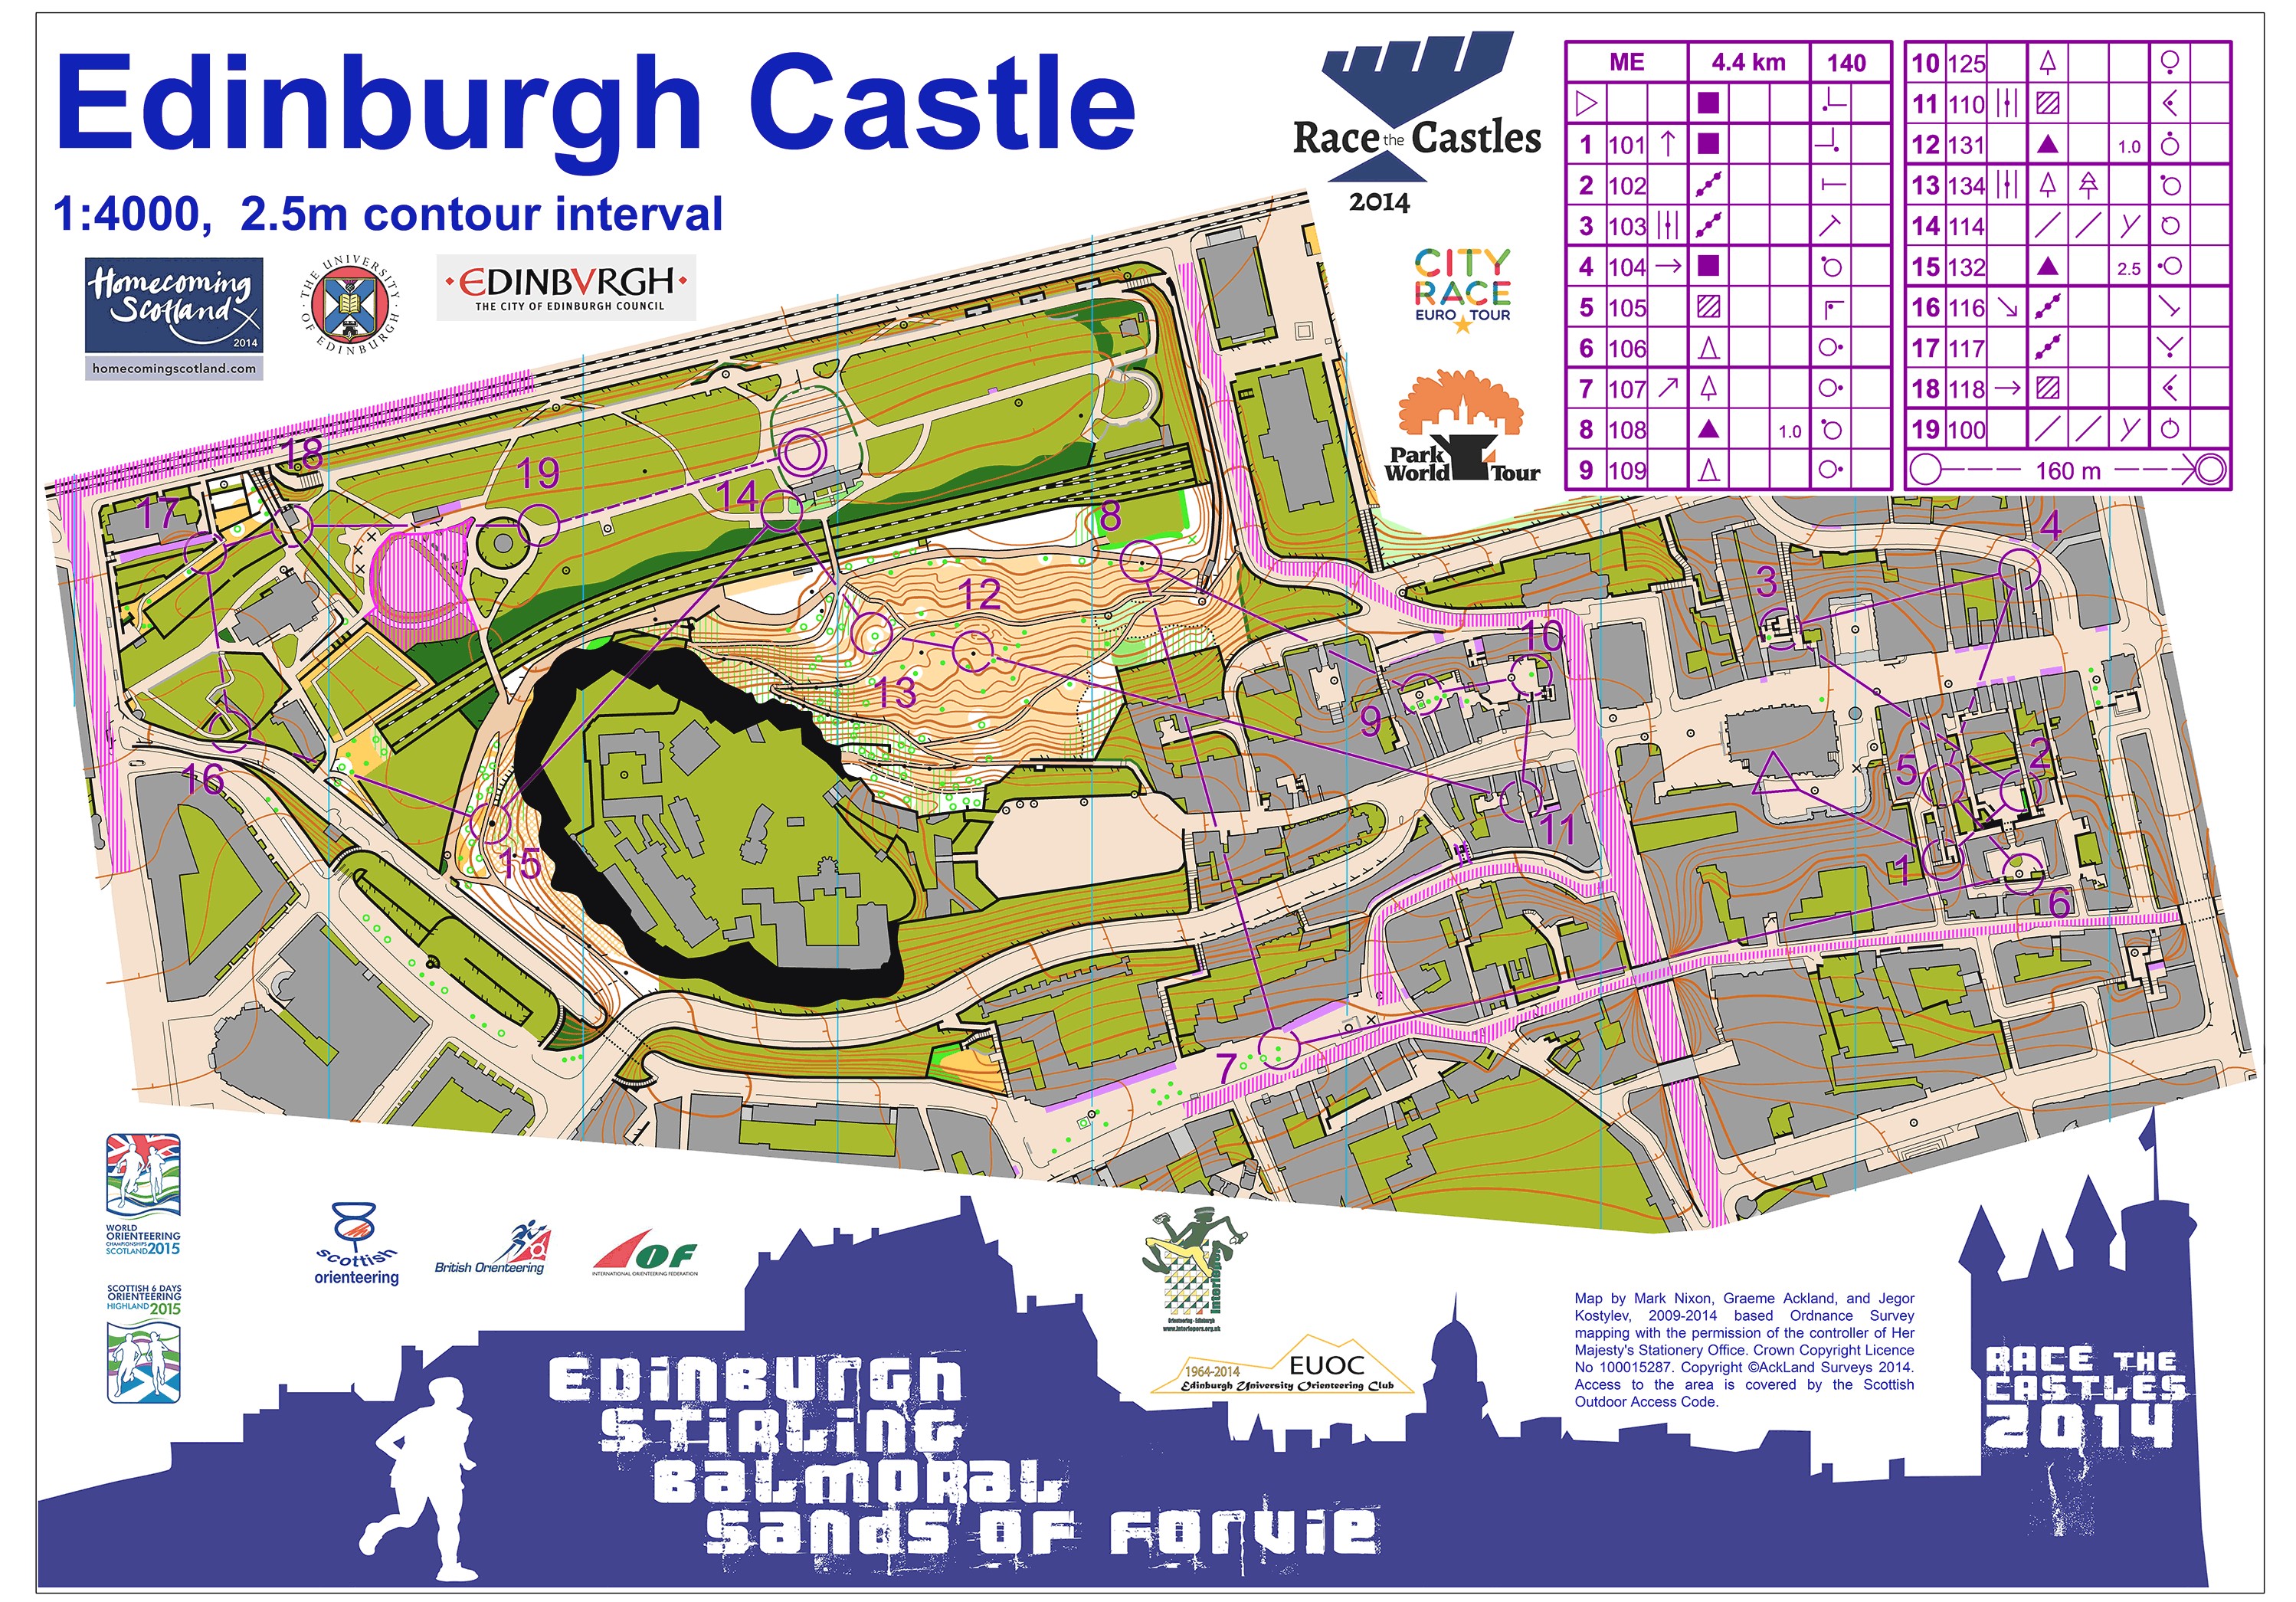 Race the castles1 (2014-10-11)